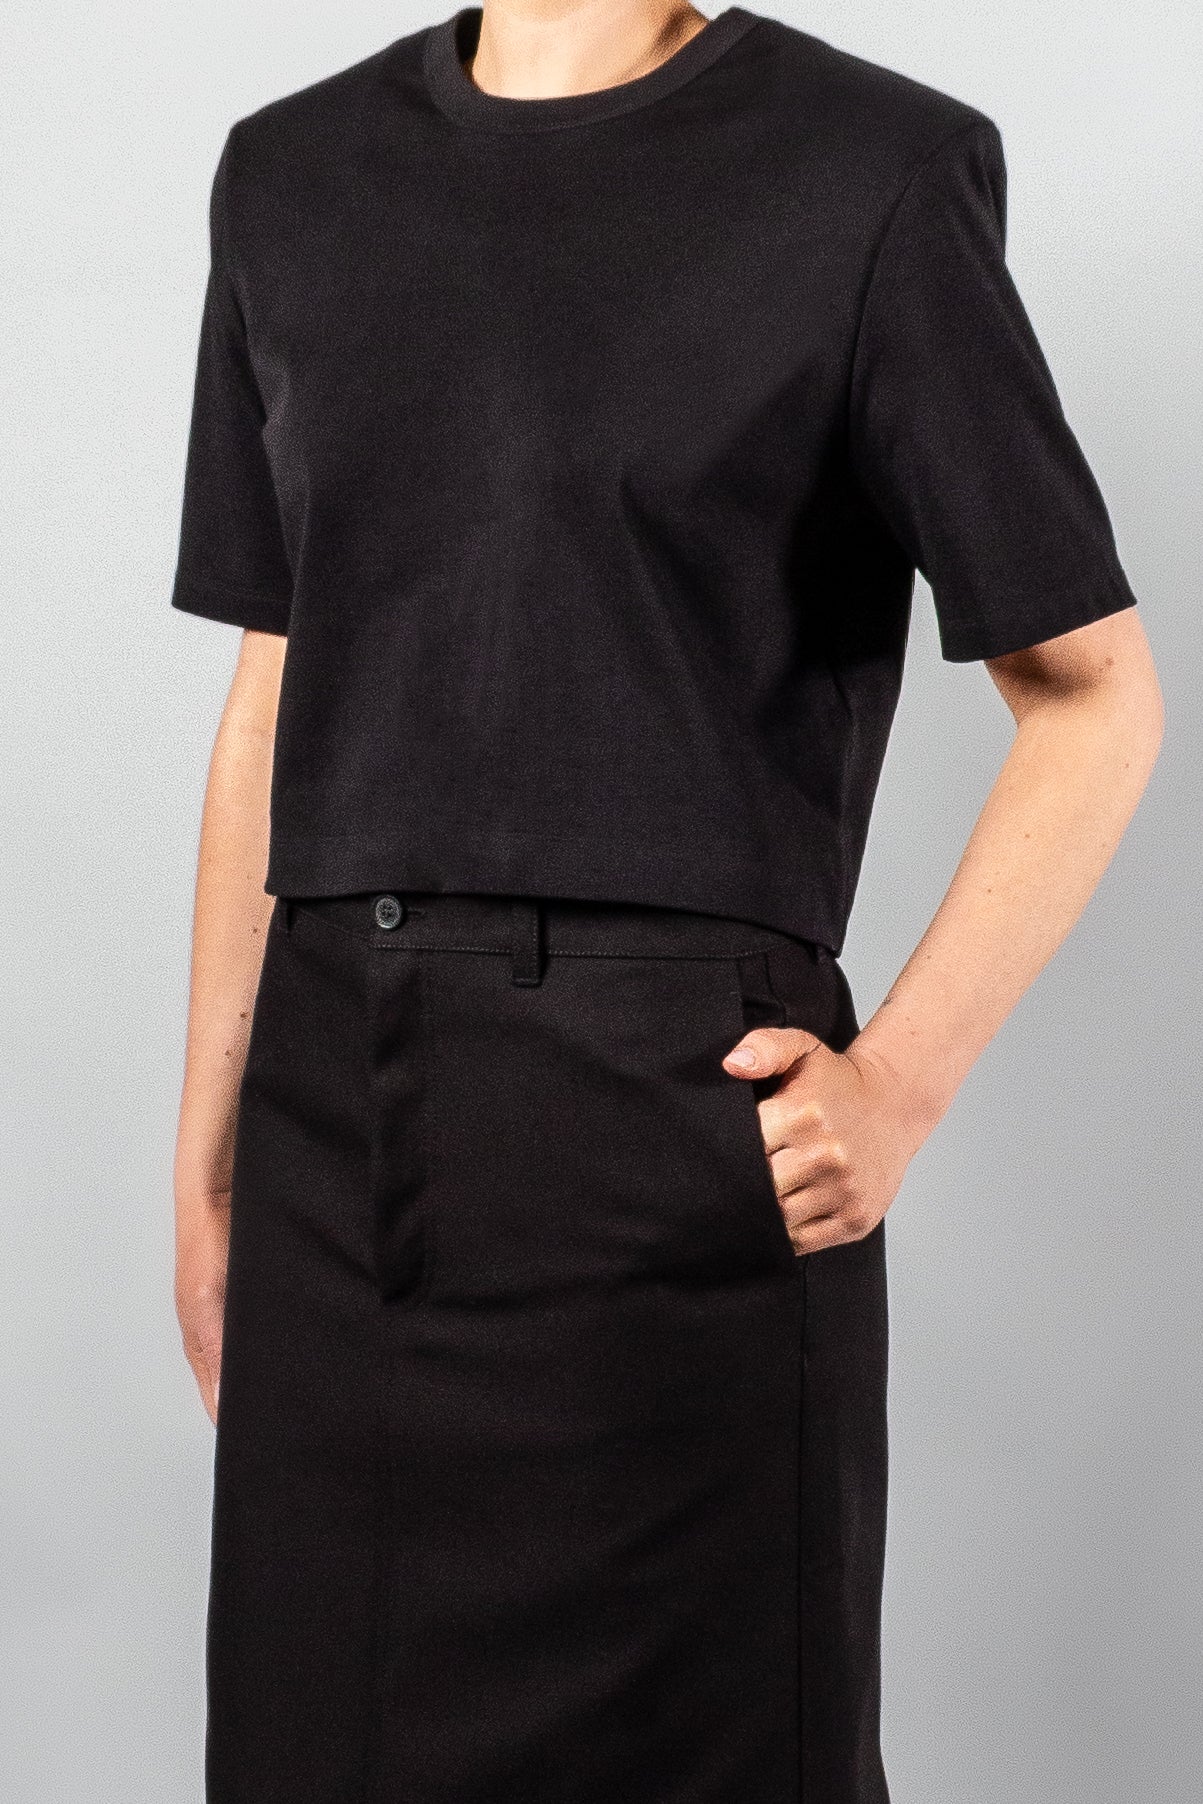 Wardrobe NYC Crop Shoulder Pad T-Shirt-Tops-Misch-Boutique-Vancouver-Canada-misch.ca